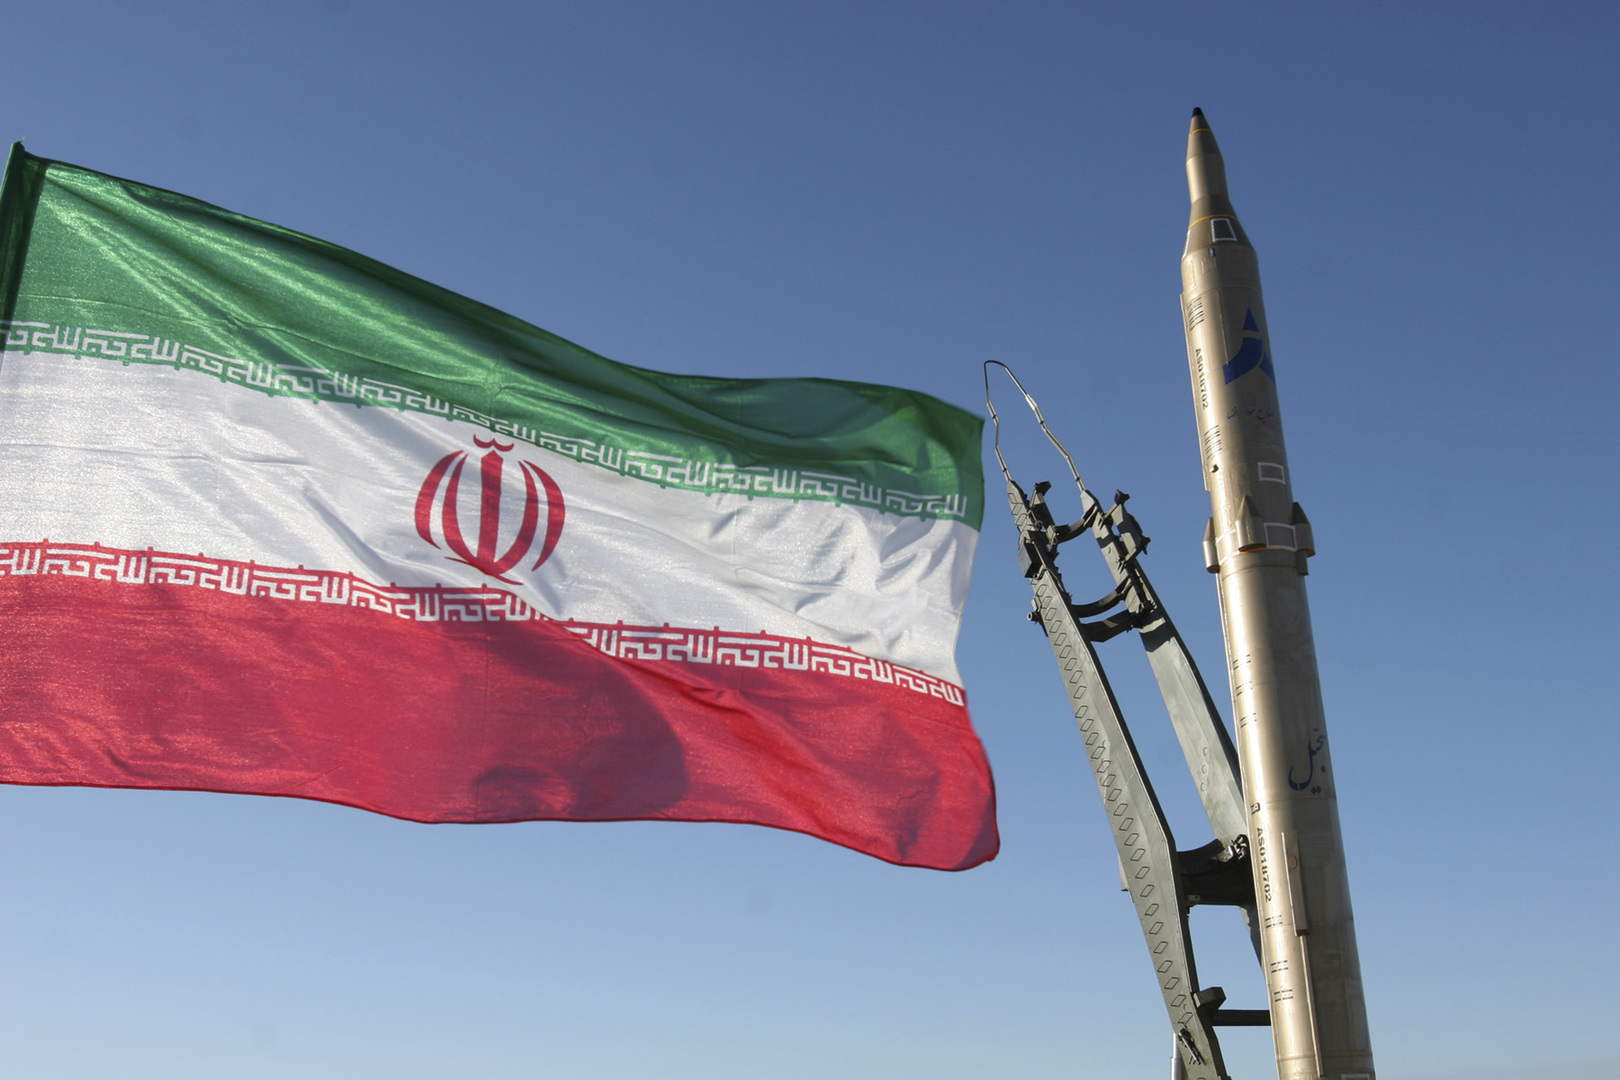 إيران: نعتبر ترسانة إسرائيل النووية تهديدا للمنطقة وسنرد بصورة قاطعة وجدية على أي خطوة ضدنا